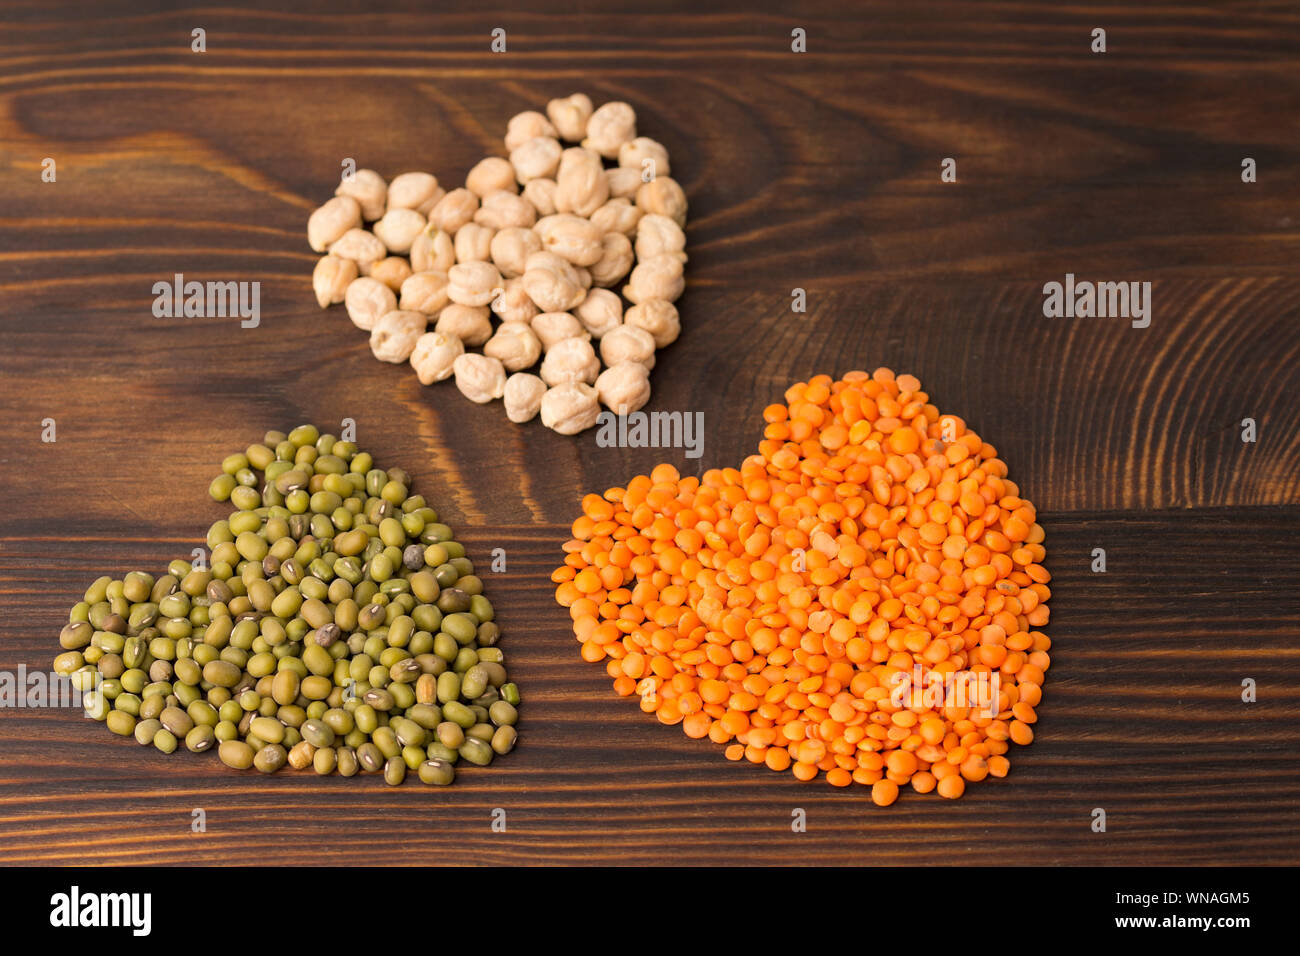 Herzförmige Küken - Erbse, Mung Bohnen und orange Linsen. Holz Hintergrund Stockfoto